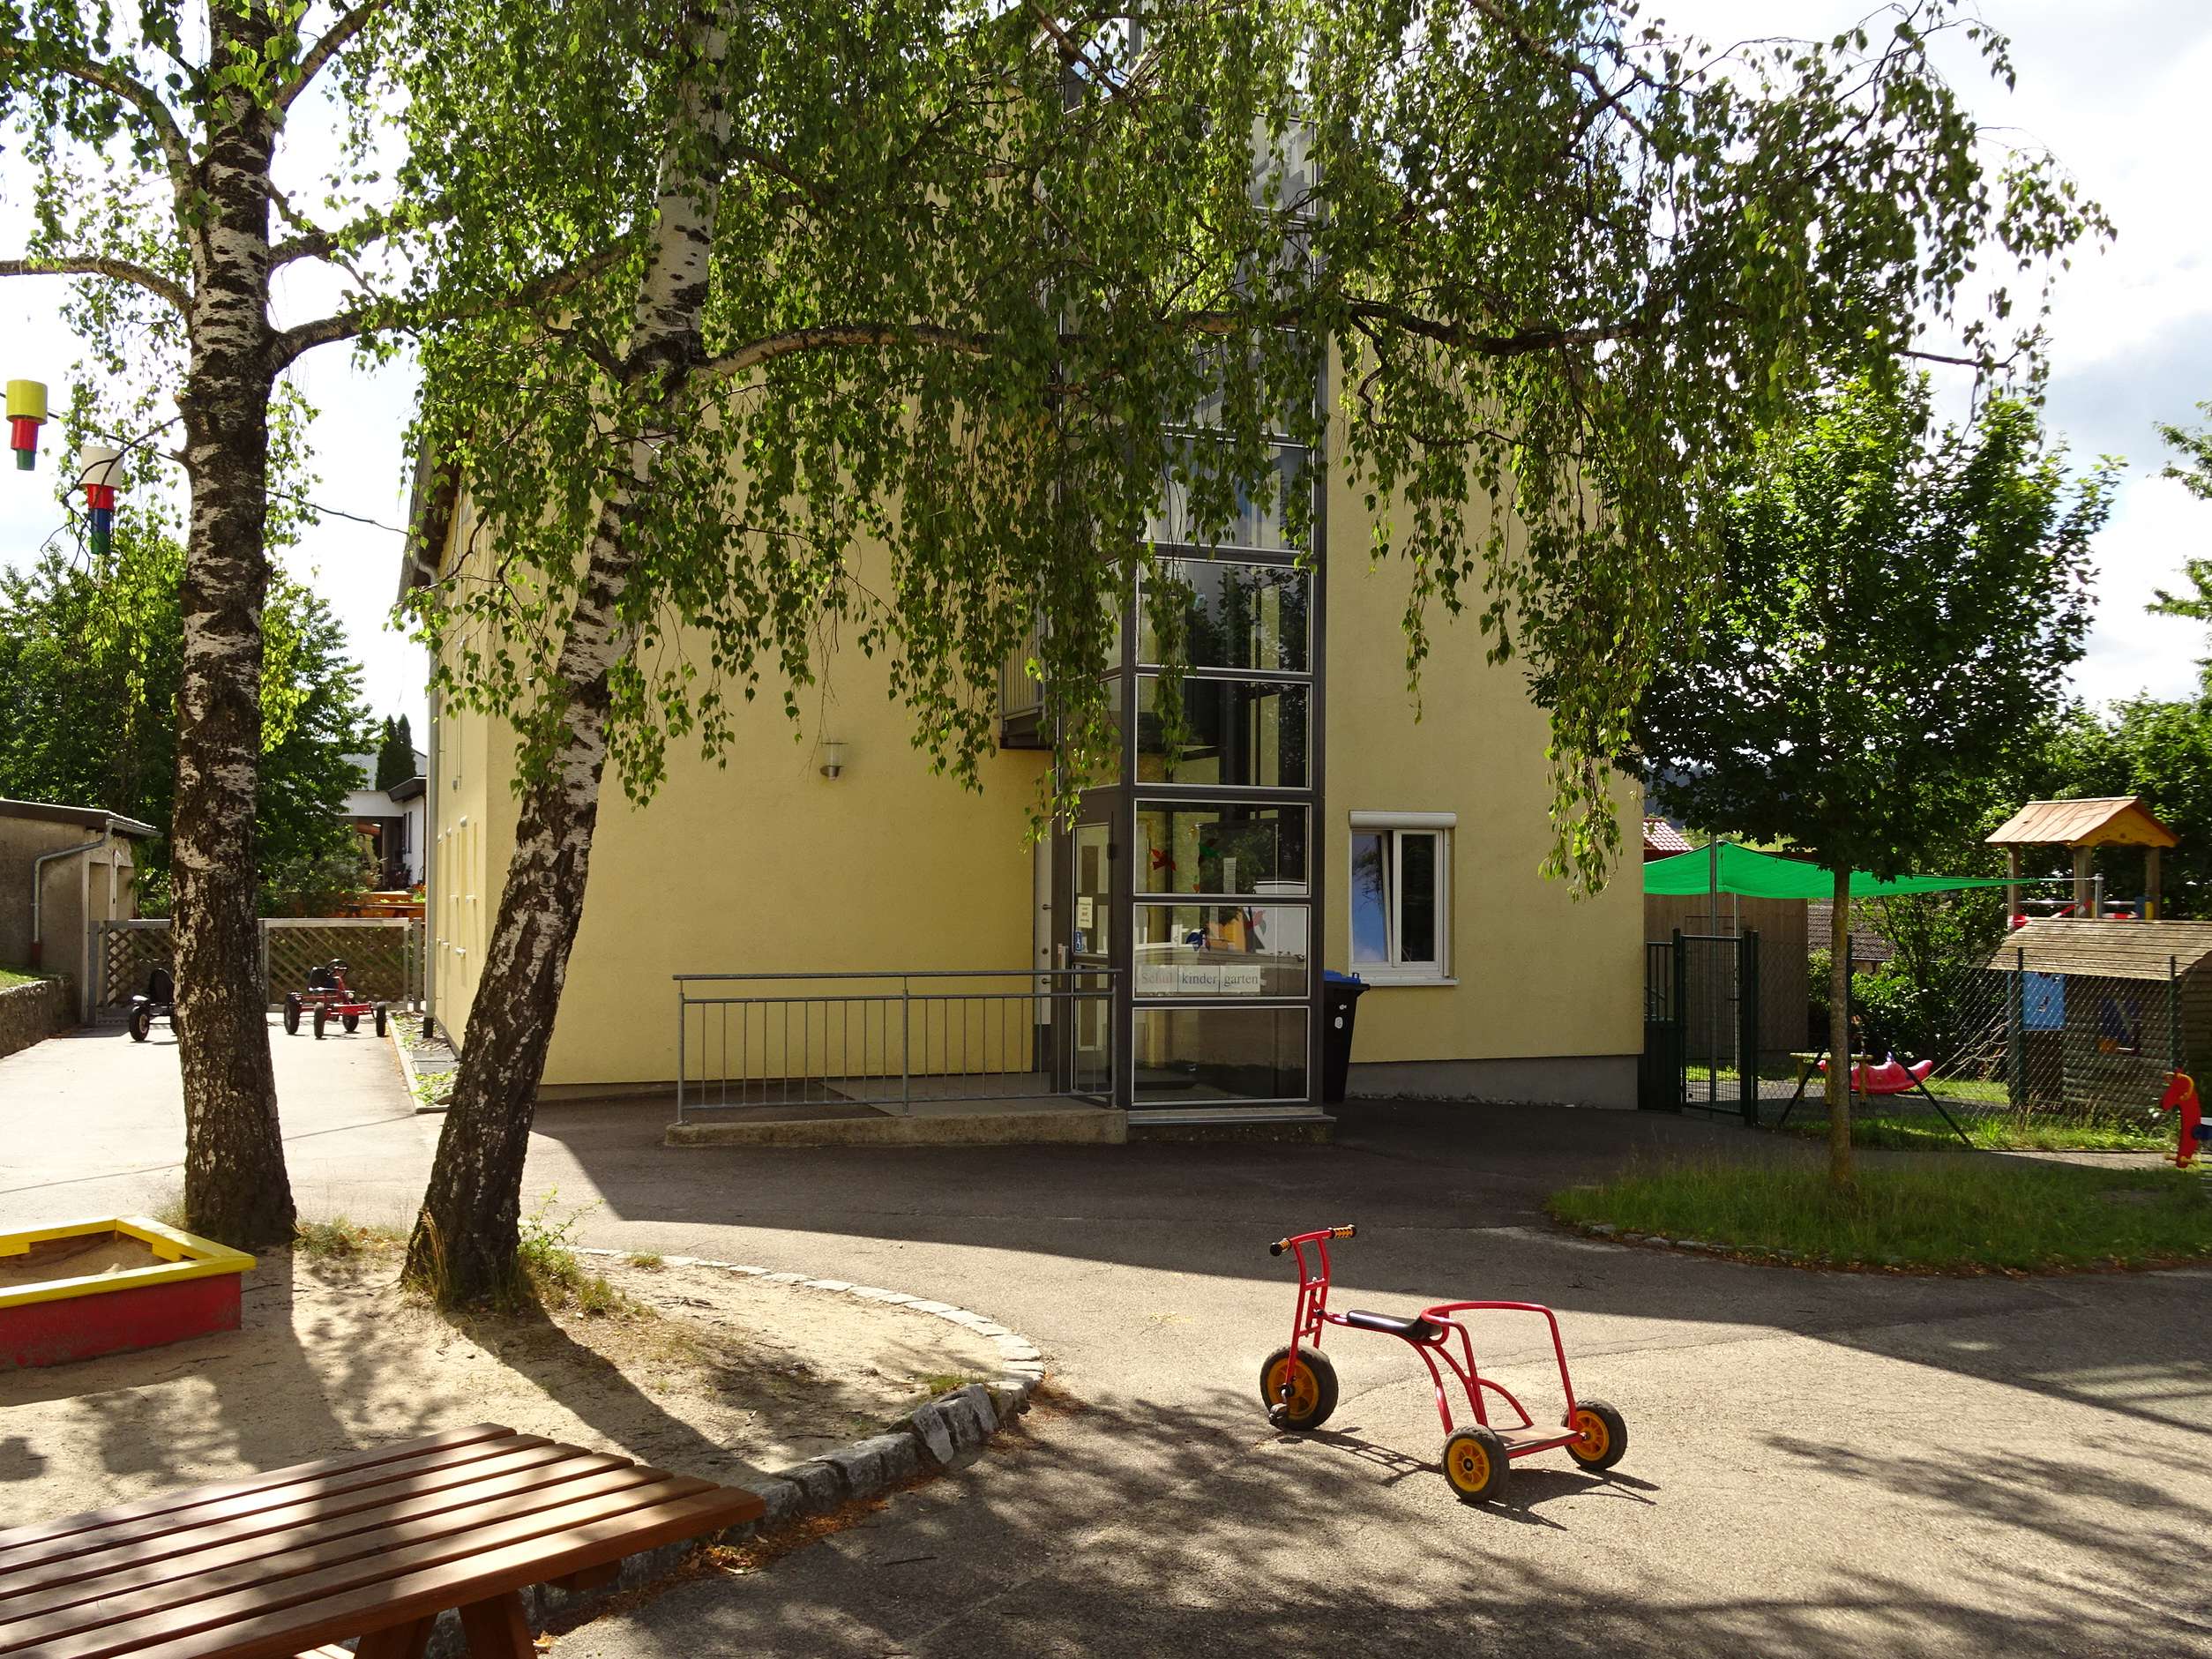  Gebäude des Schulkindergartens - das Bild wird mit Klick vergrößert 